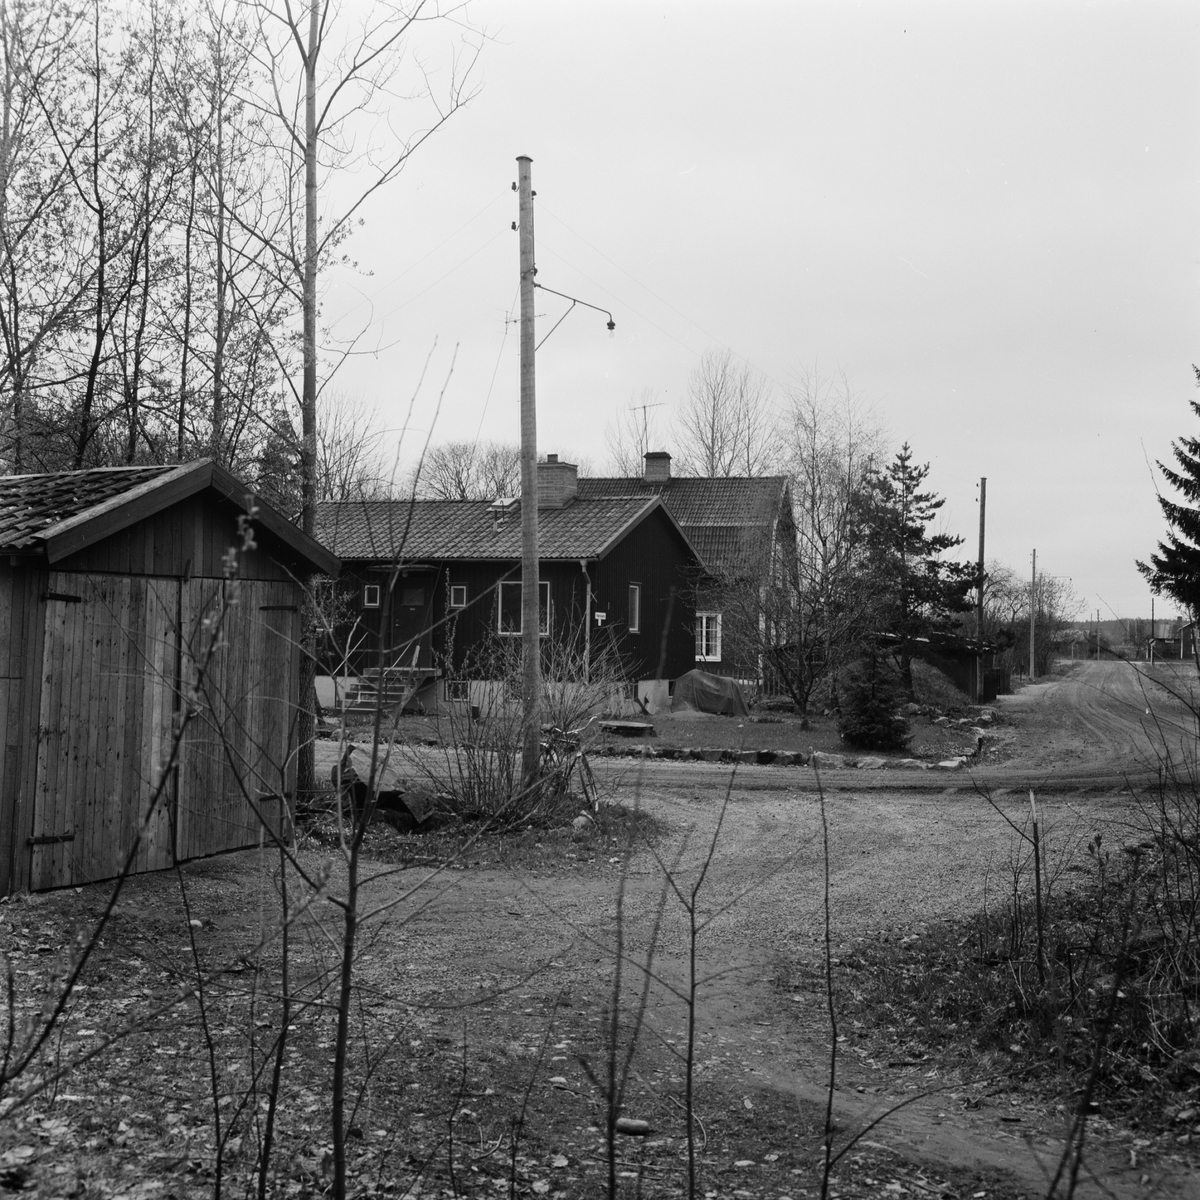 Försäljning av gårdar, sannolikt Tierpstrakten, Uppland, maj 1968